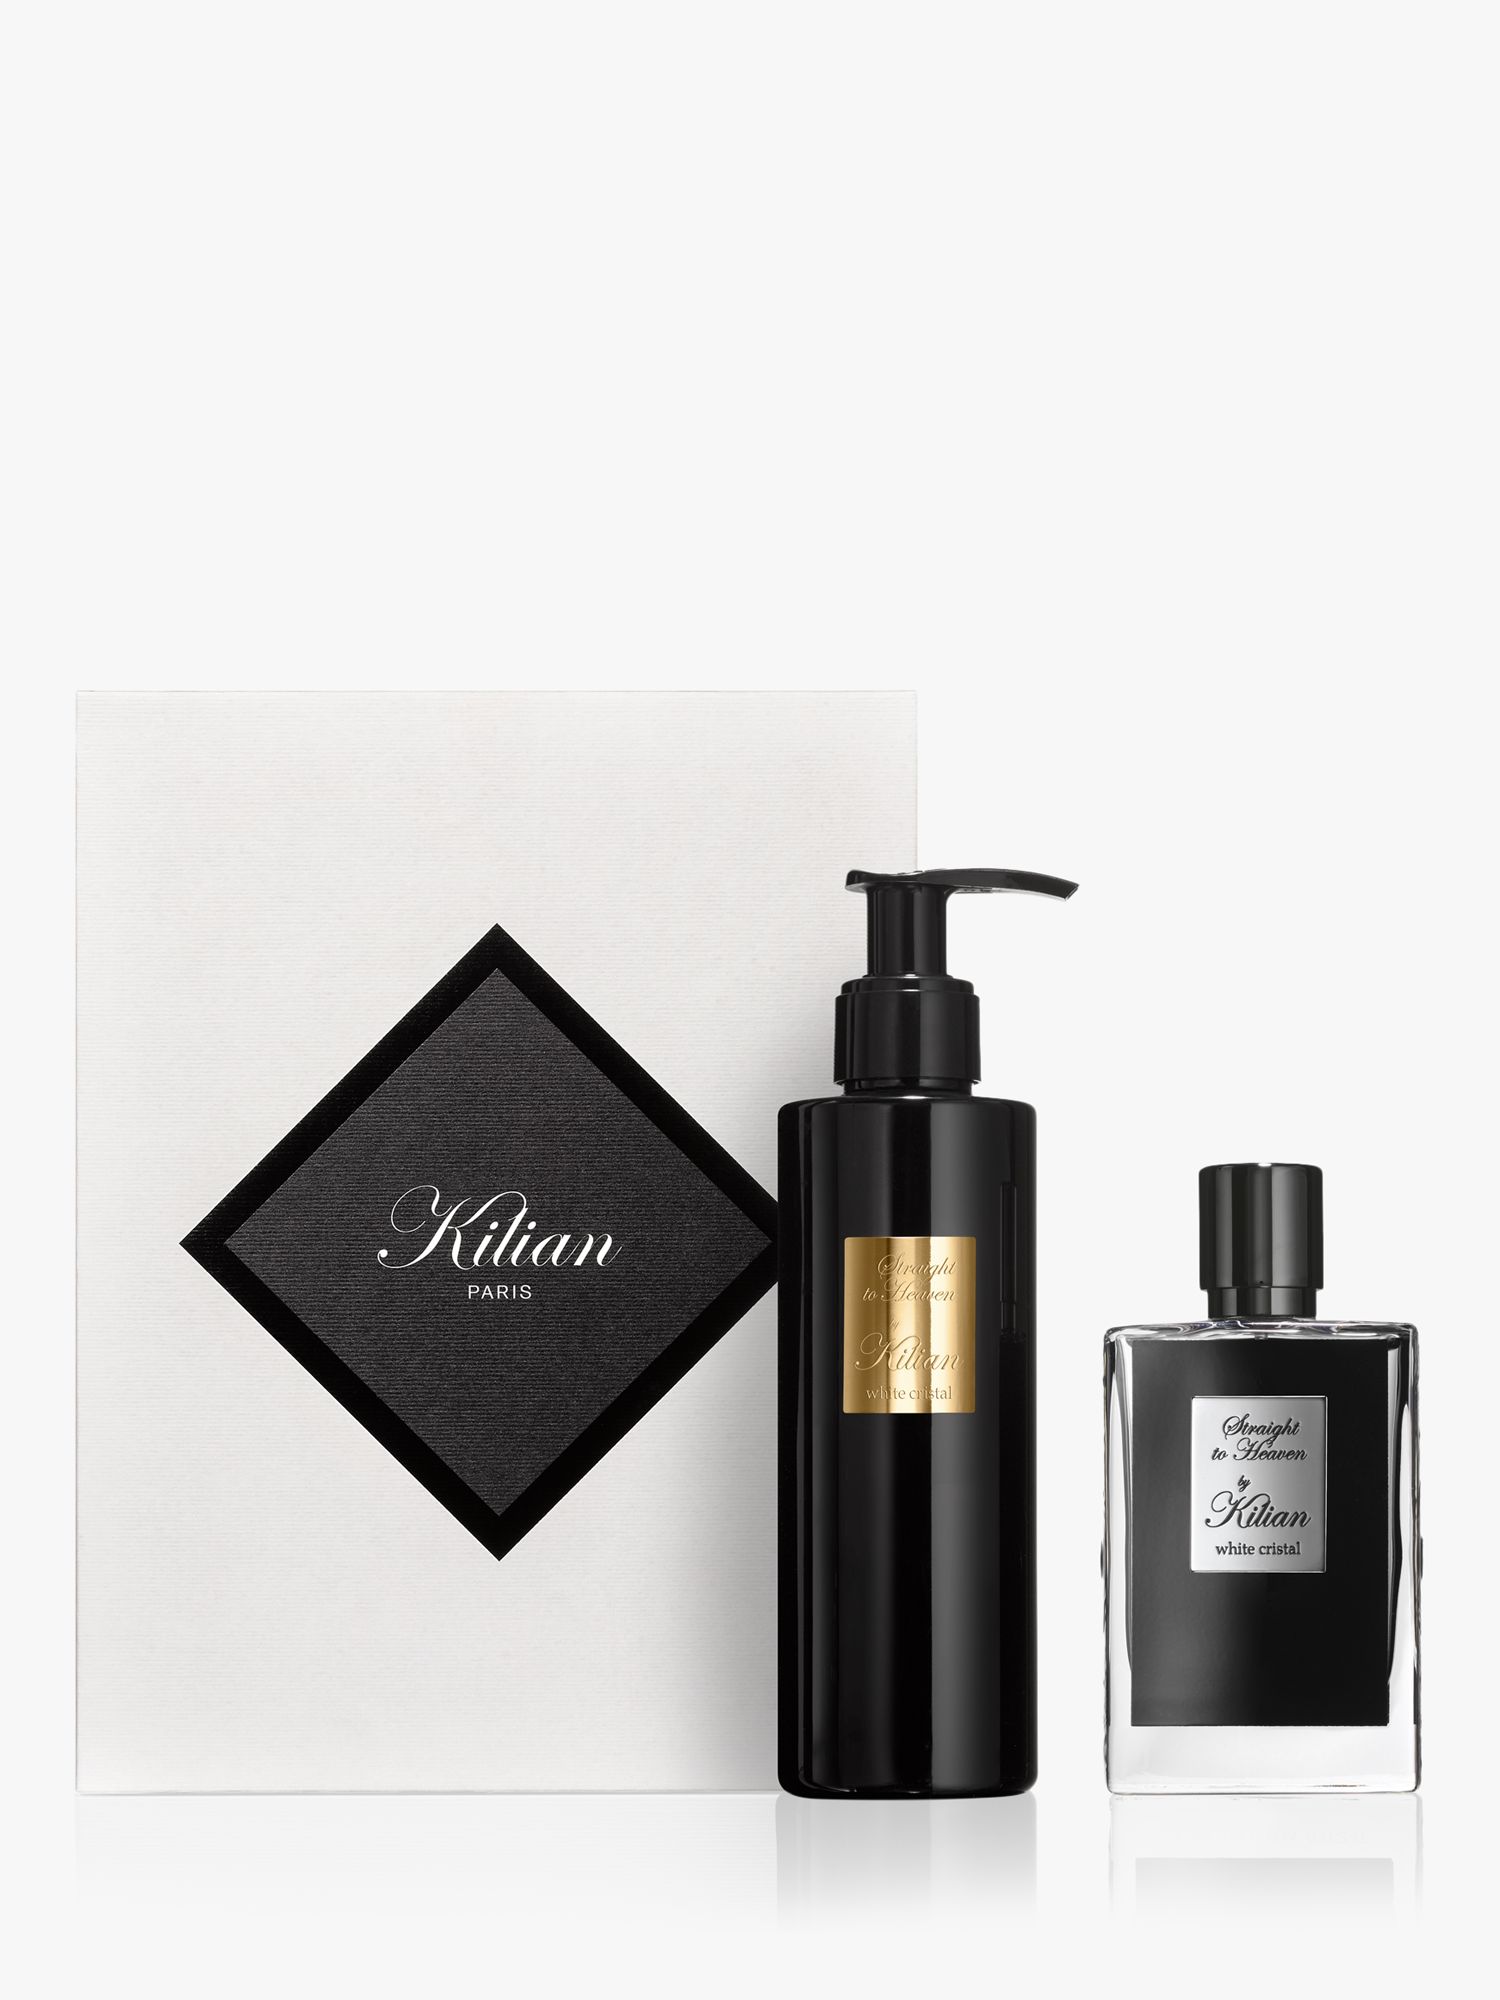 Kilian Straight To Heaven 50ml Eau de Parfum Fragrance Gift Set at John